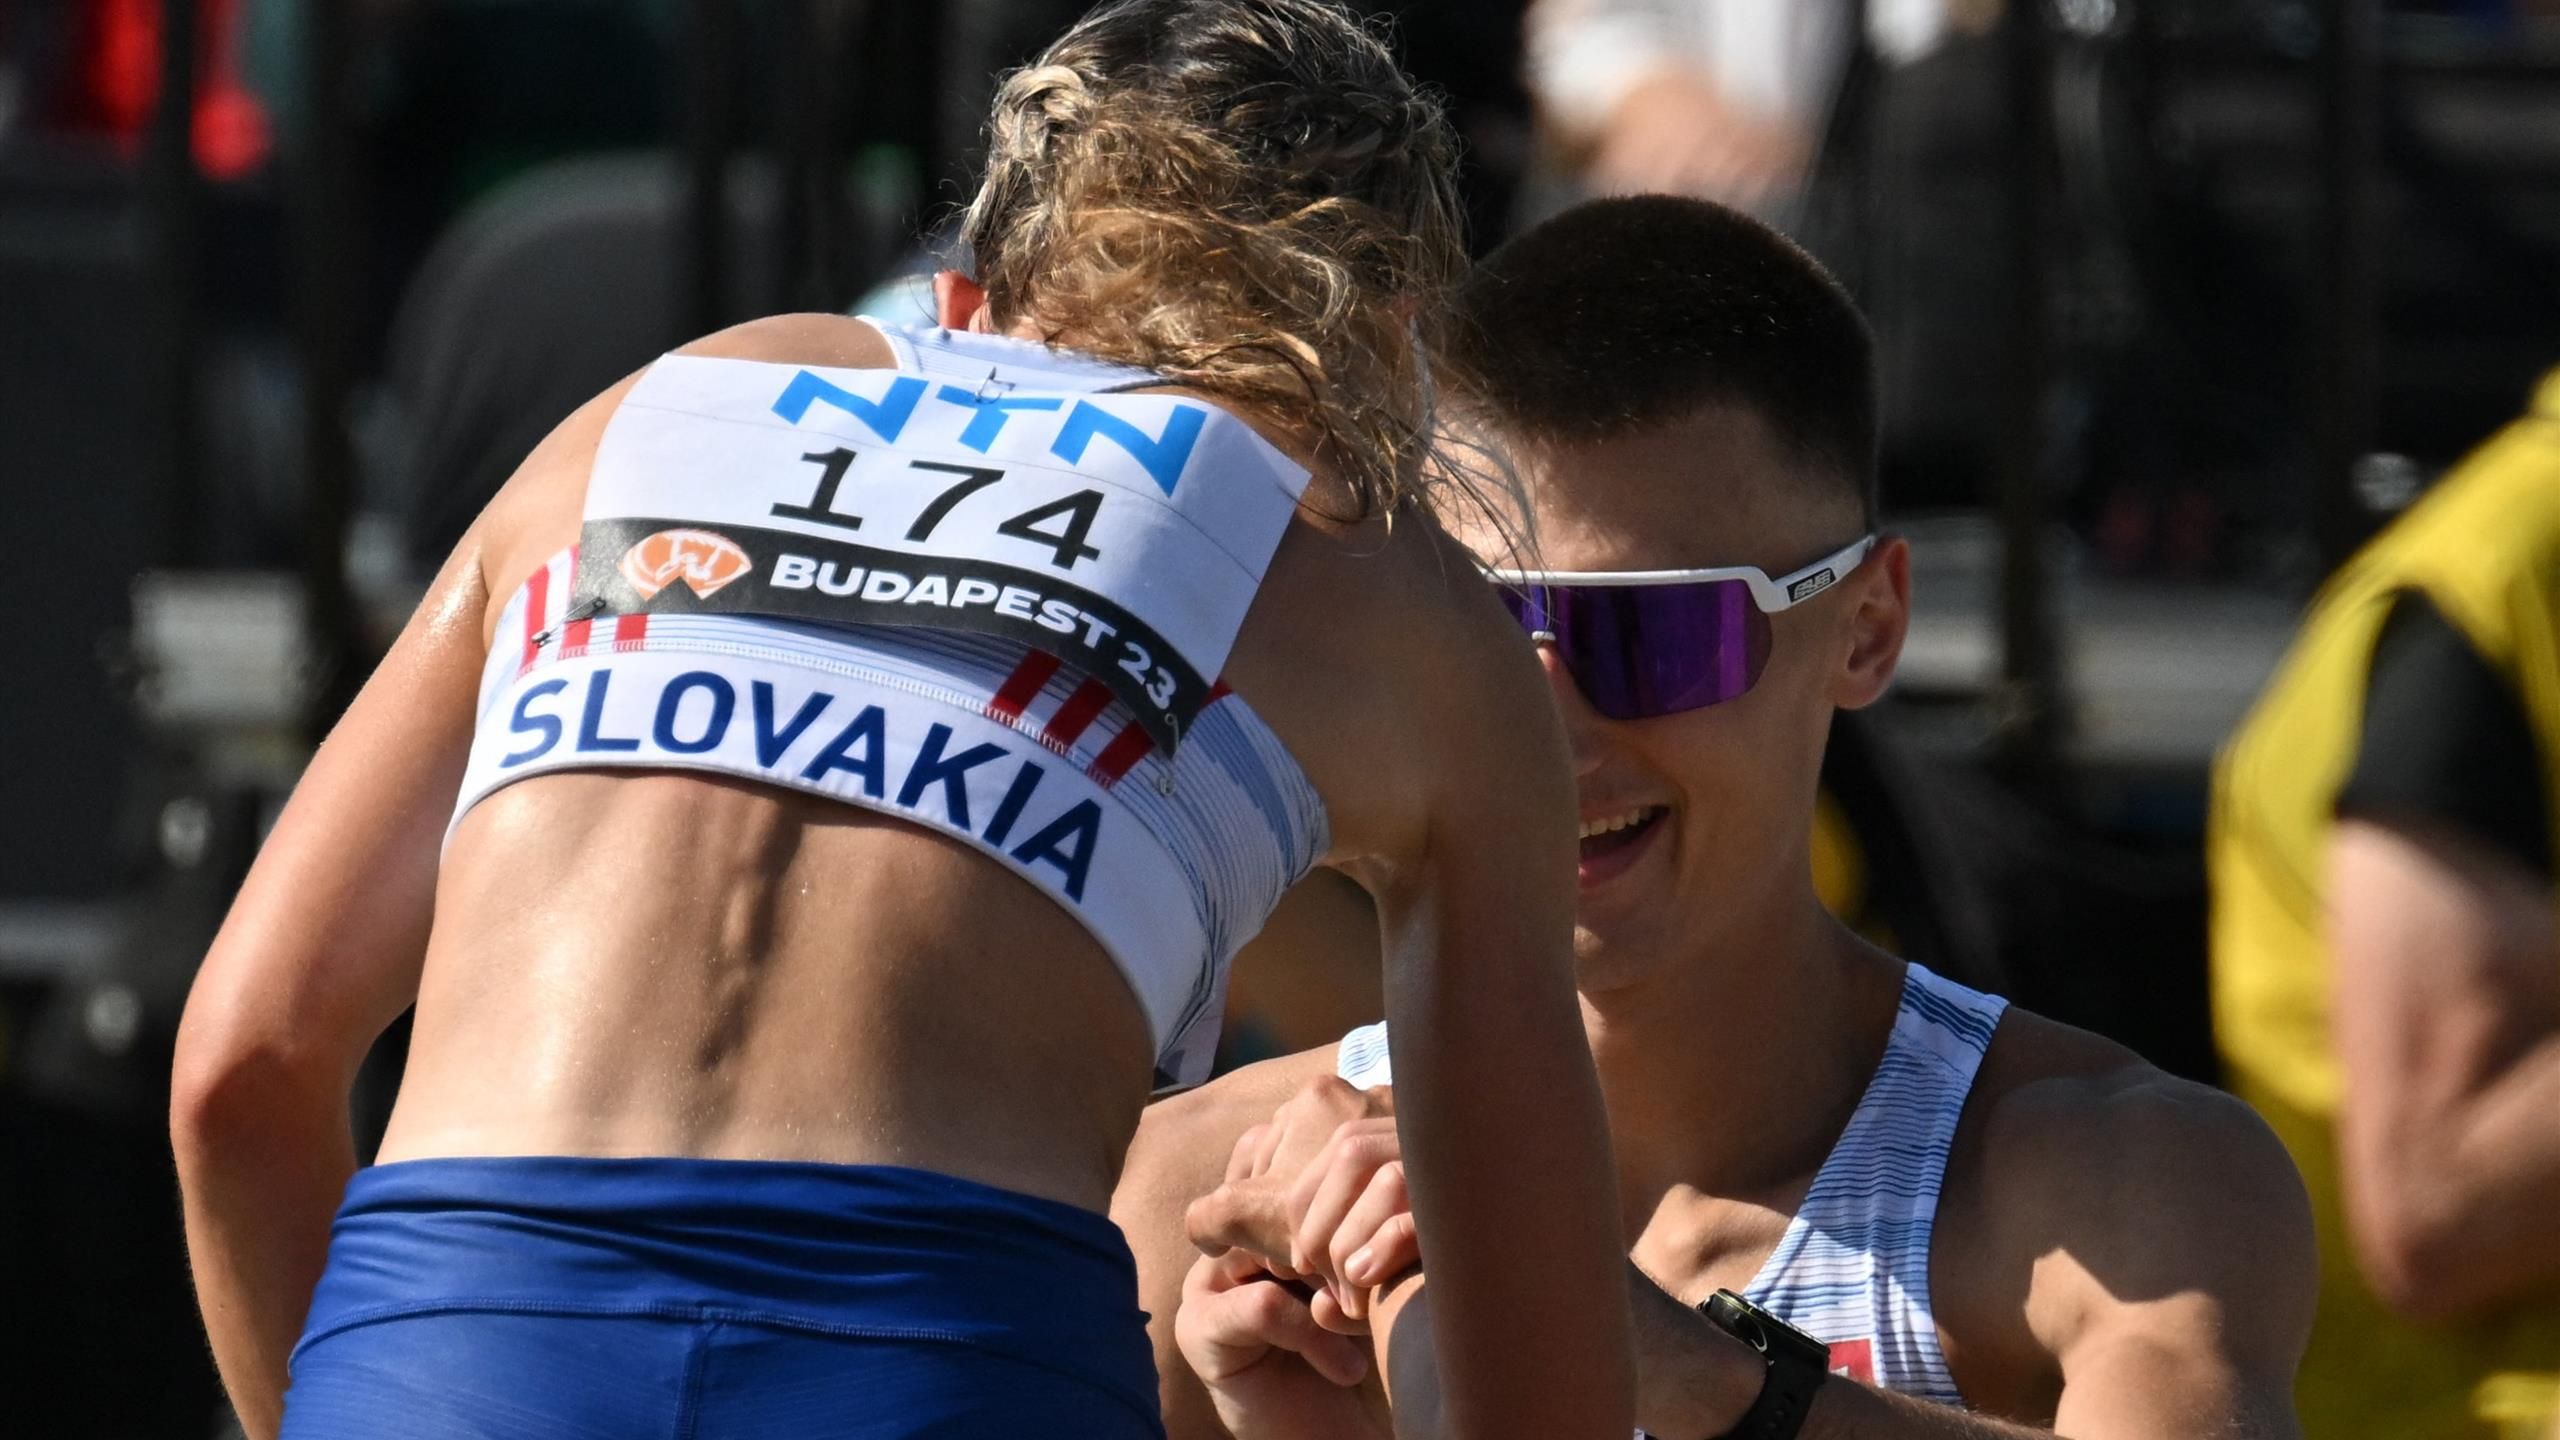 Slovenskí chodci Hana Borzalová a Dominik Černý prebehli cieľovú pásku na majstrovstvách sveta v atletike IAAF